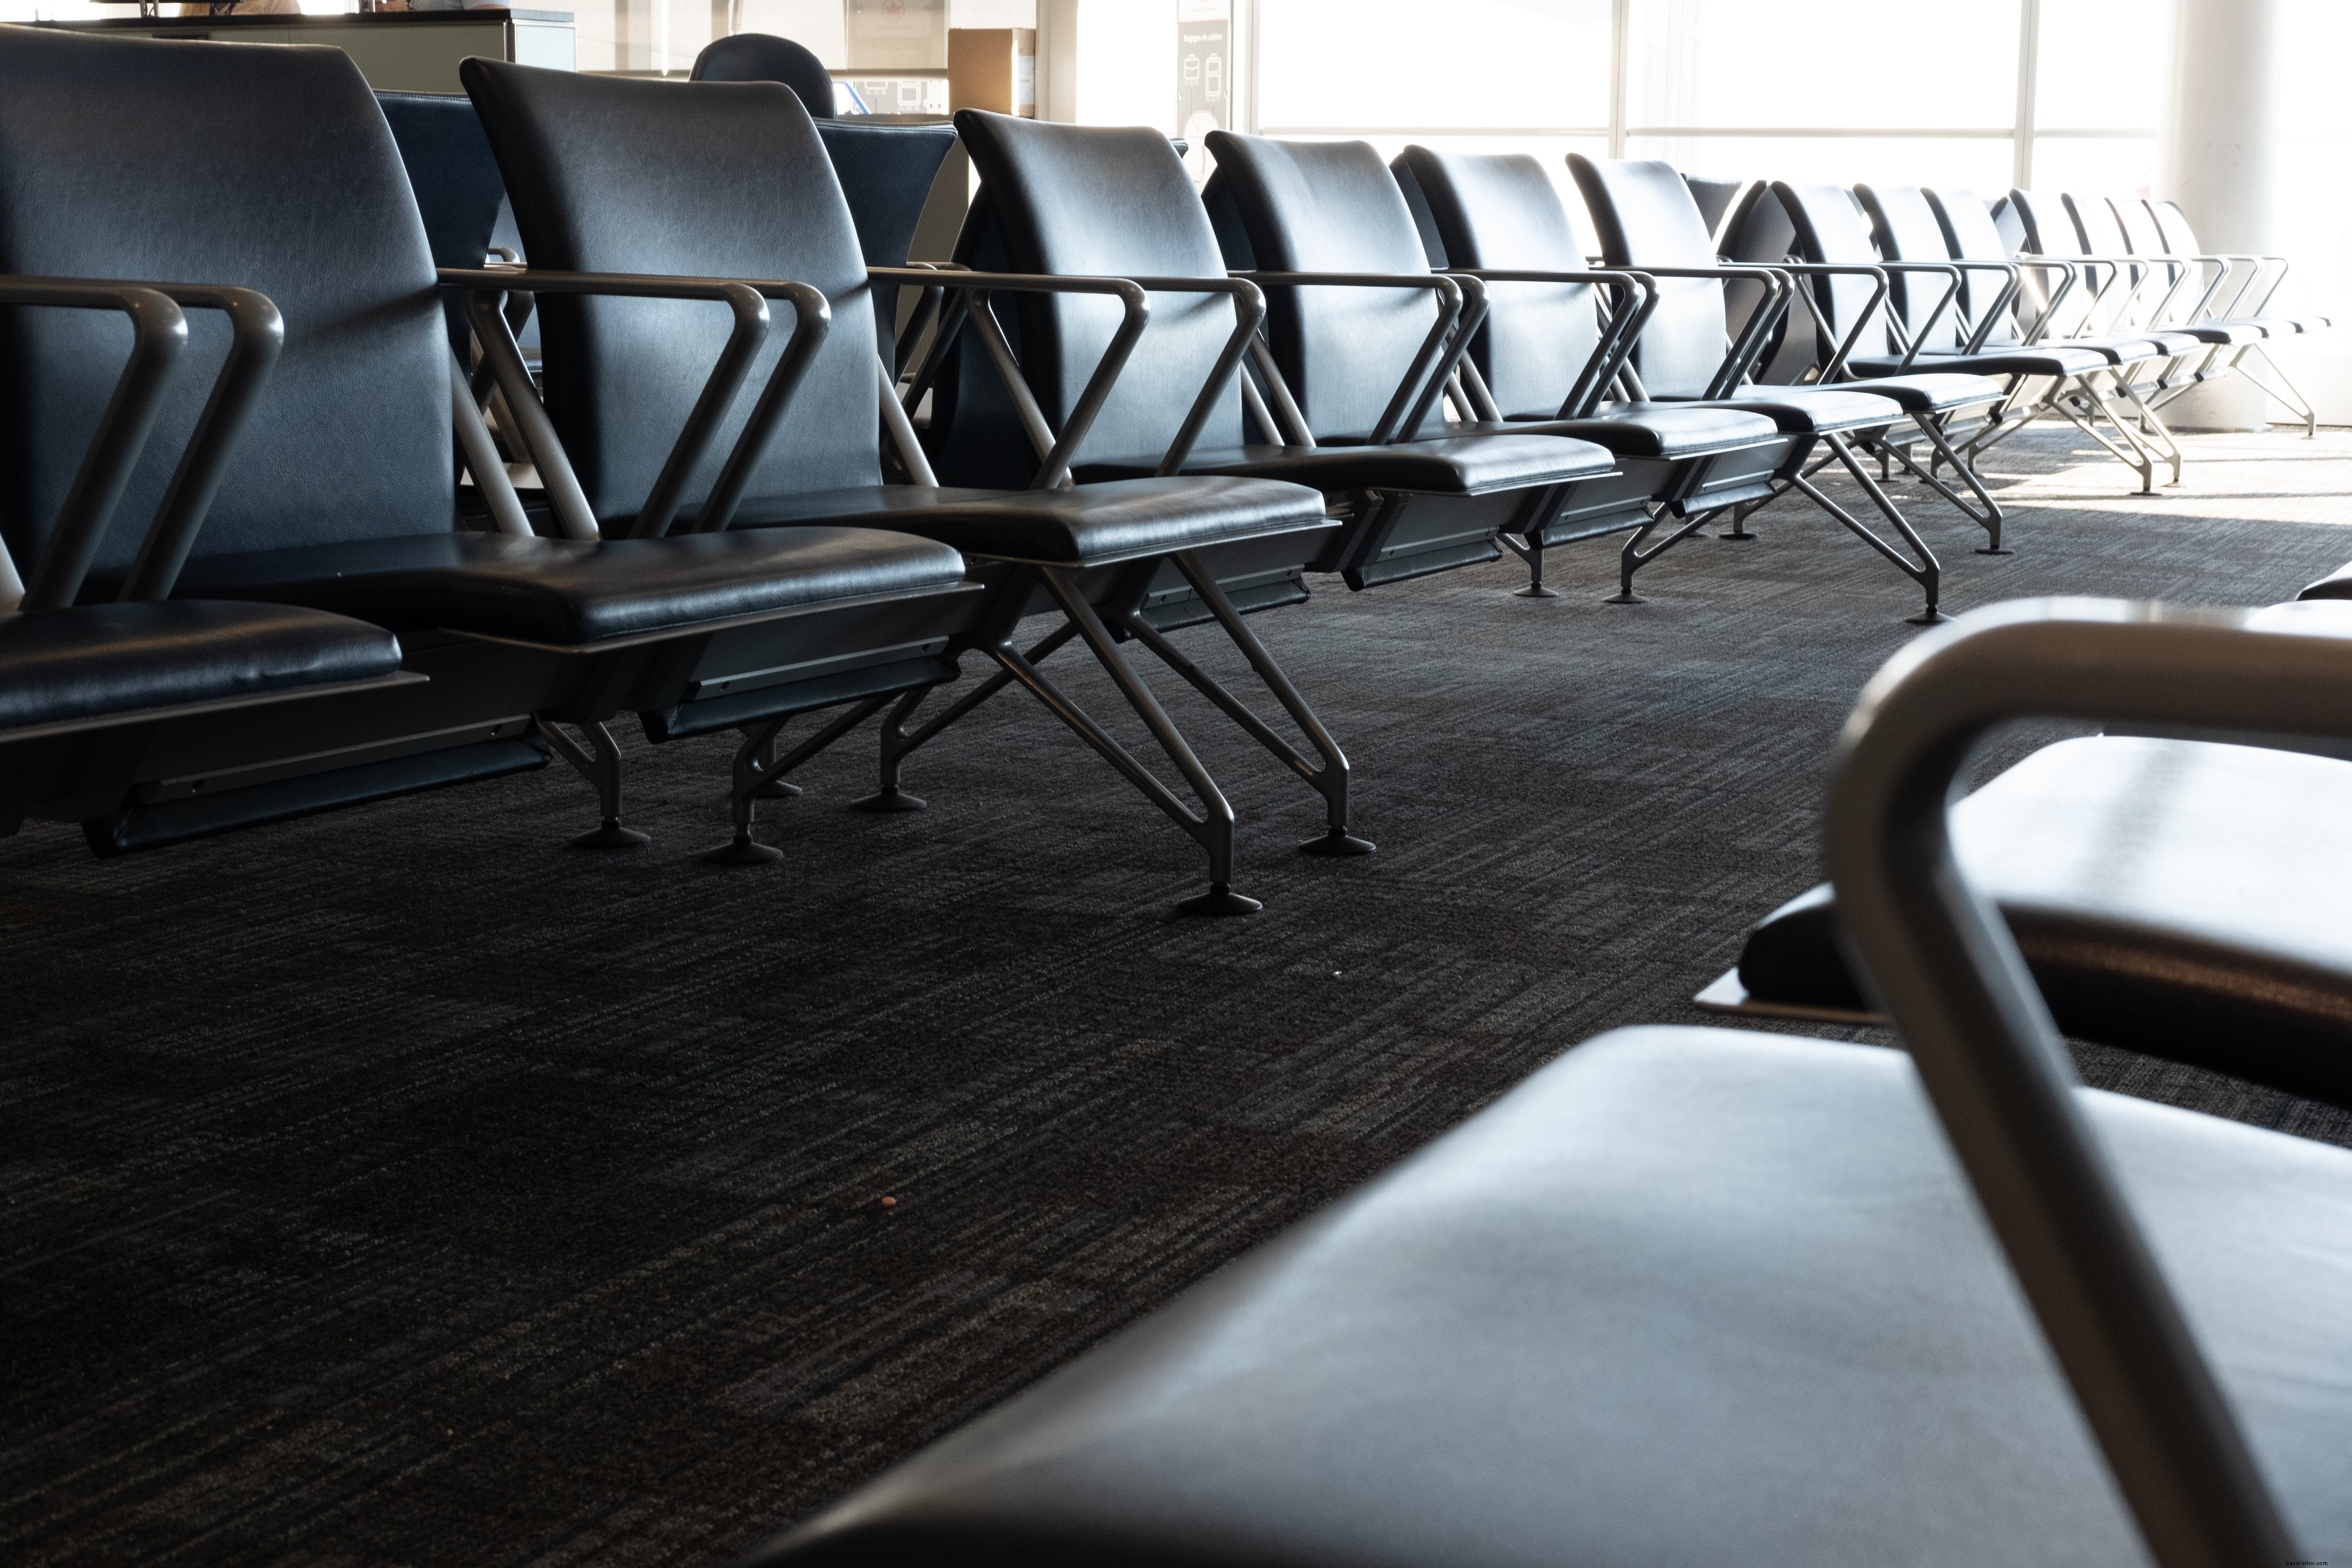 Foto dei posti a sedere nell area di attesa dell aeroporto